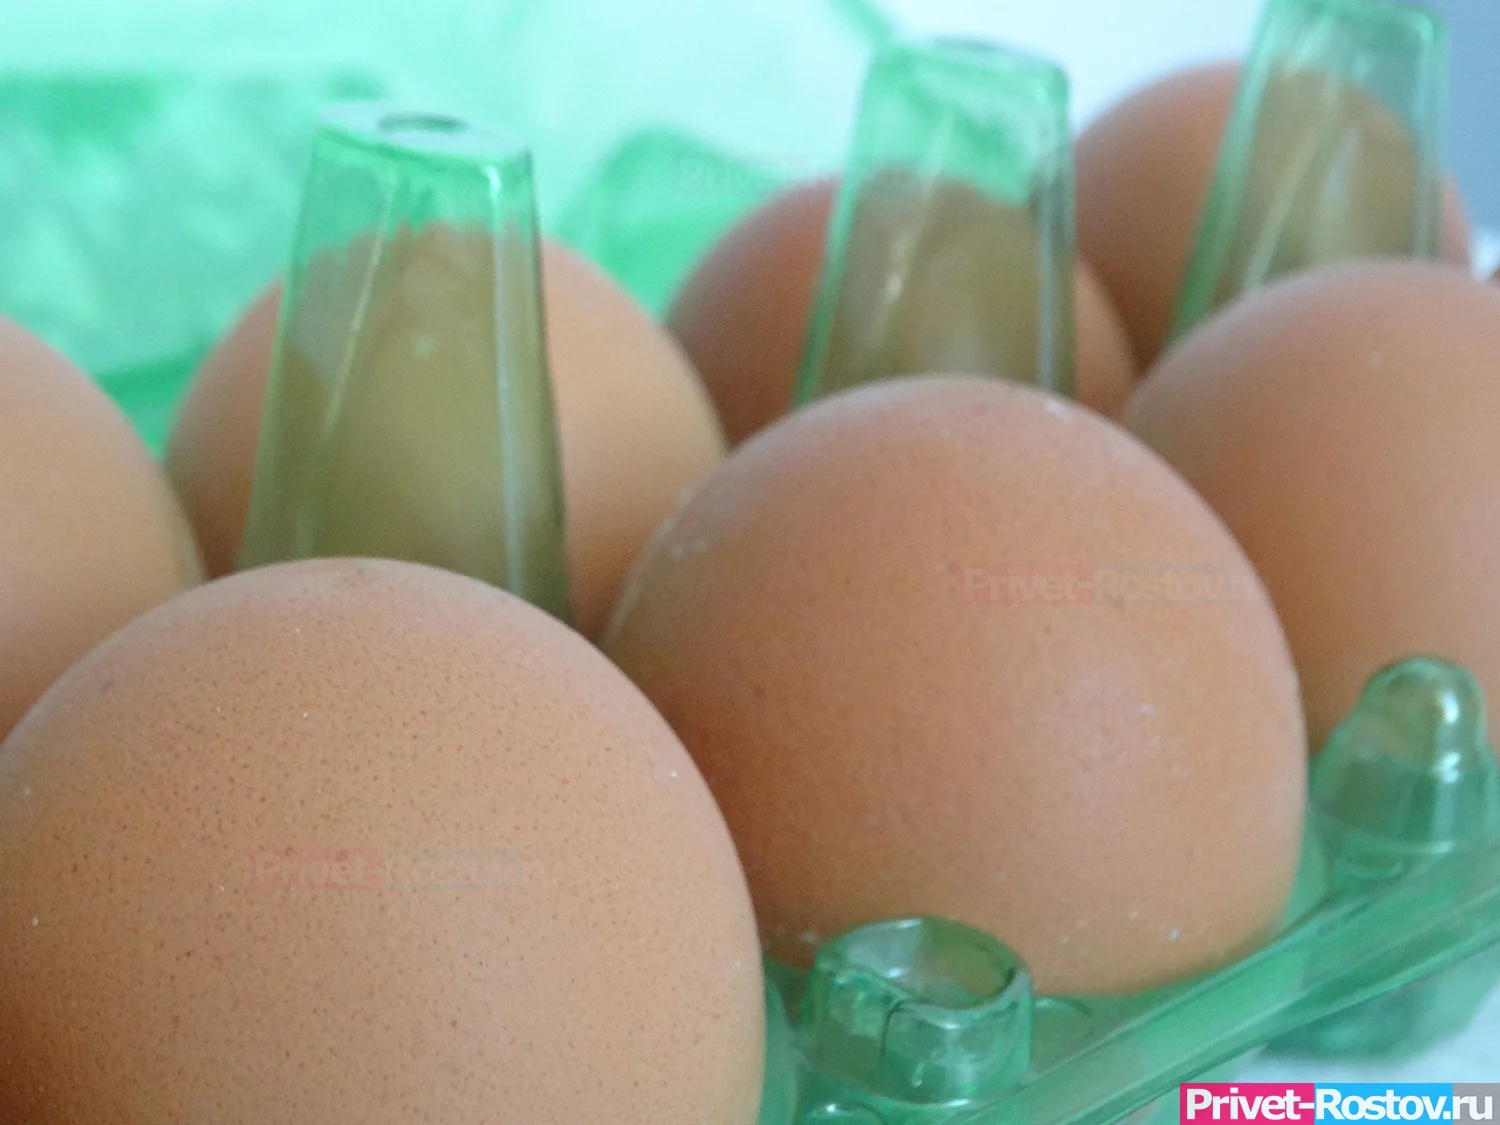 Штрафами пригрозили поставщикам курятины и яиц в Ростовской области за бешенные цены